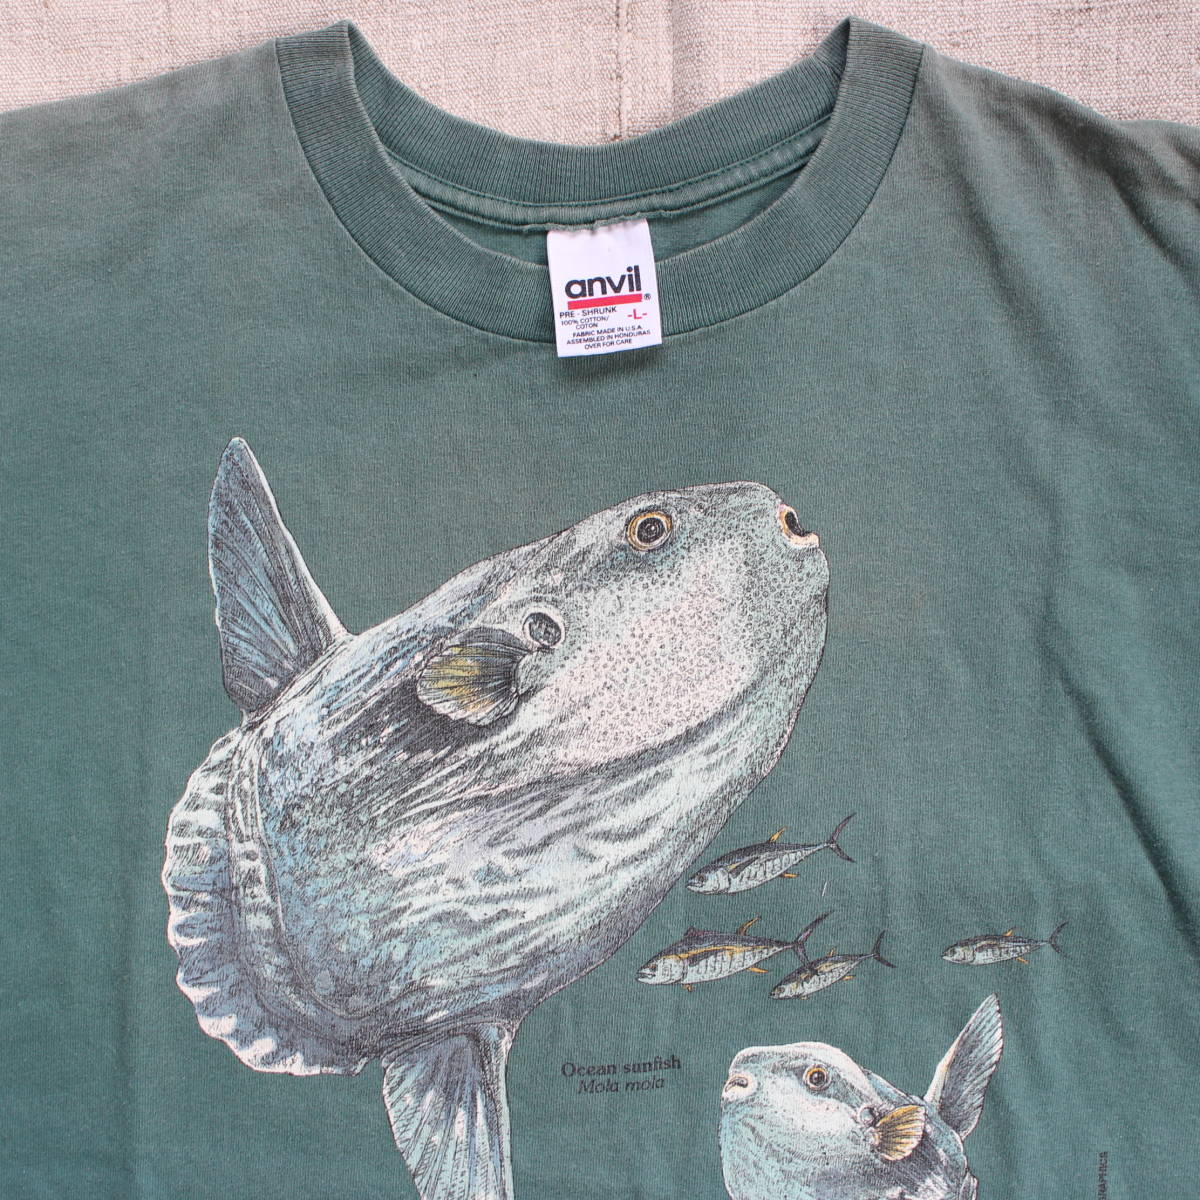 1998年 モントレーベイ アクアリウム マンボー ヴィンテージTシャツ USA アメリカ 水族館 フグ 魚 フィッシュ 古着anvilフェード アート_画像7